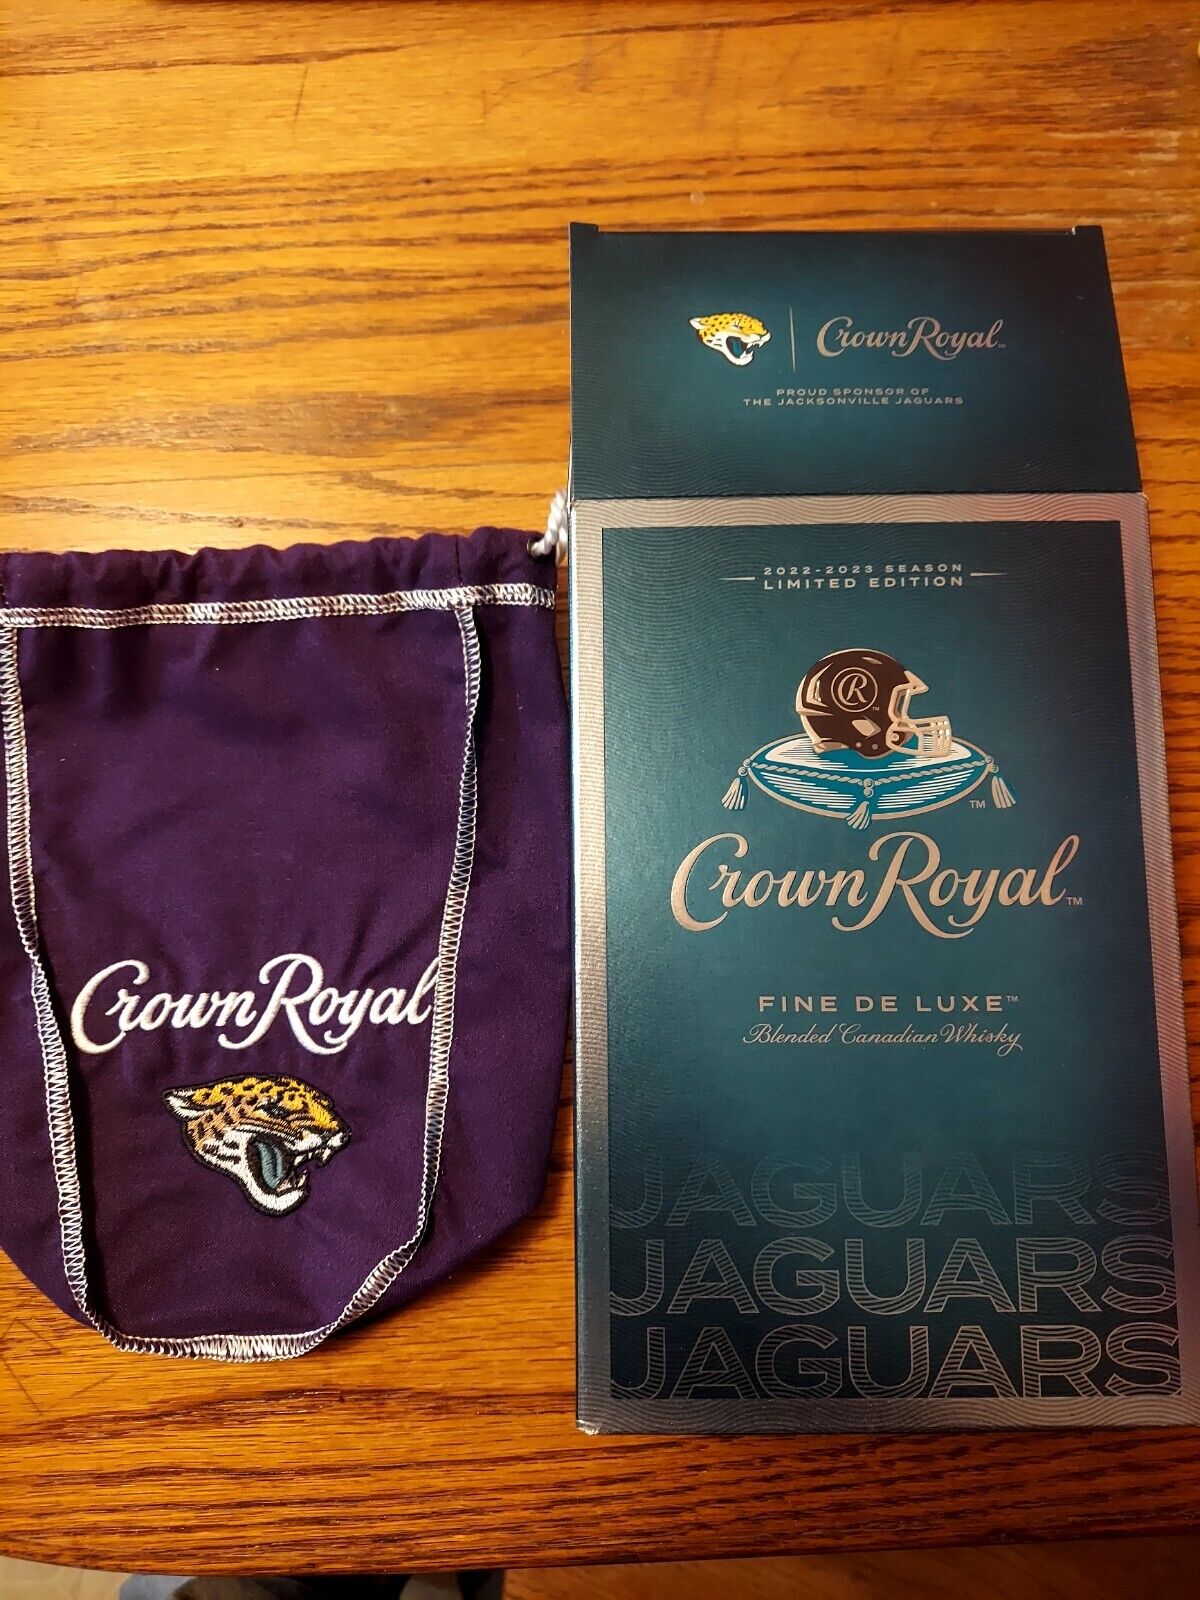 Crown Royal Jacksonville Jaguars Bag and Box ONLY Super bowl NFL Football AFC